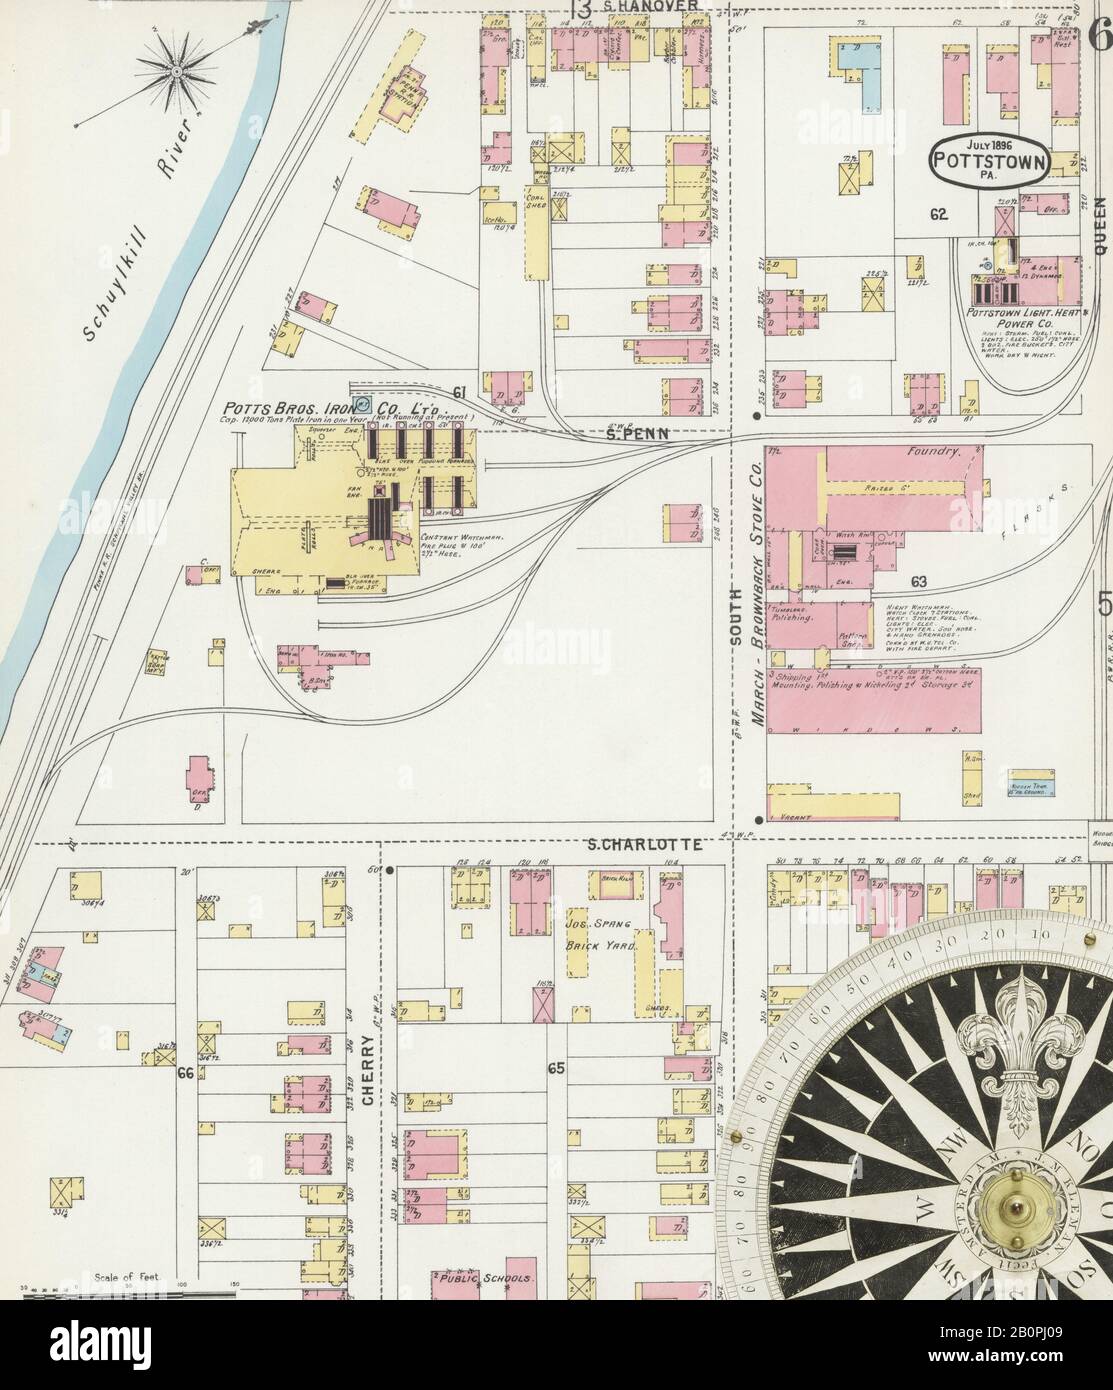 Imagen 6 Del Mapa Del Seguro De Incendios Sanborn De Pottstown, Condado De Montgomery, Pennsylvania. Jul 1896. 14 Hoja(s), América, mapa de calles con una brújula del siglo Xix Foto de stock